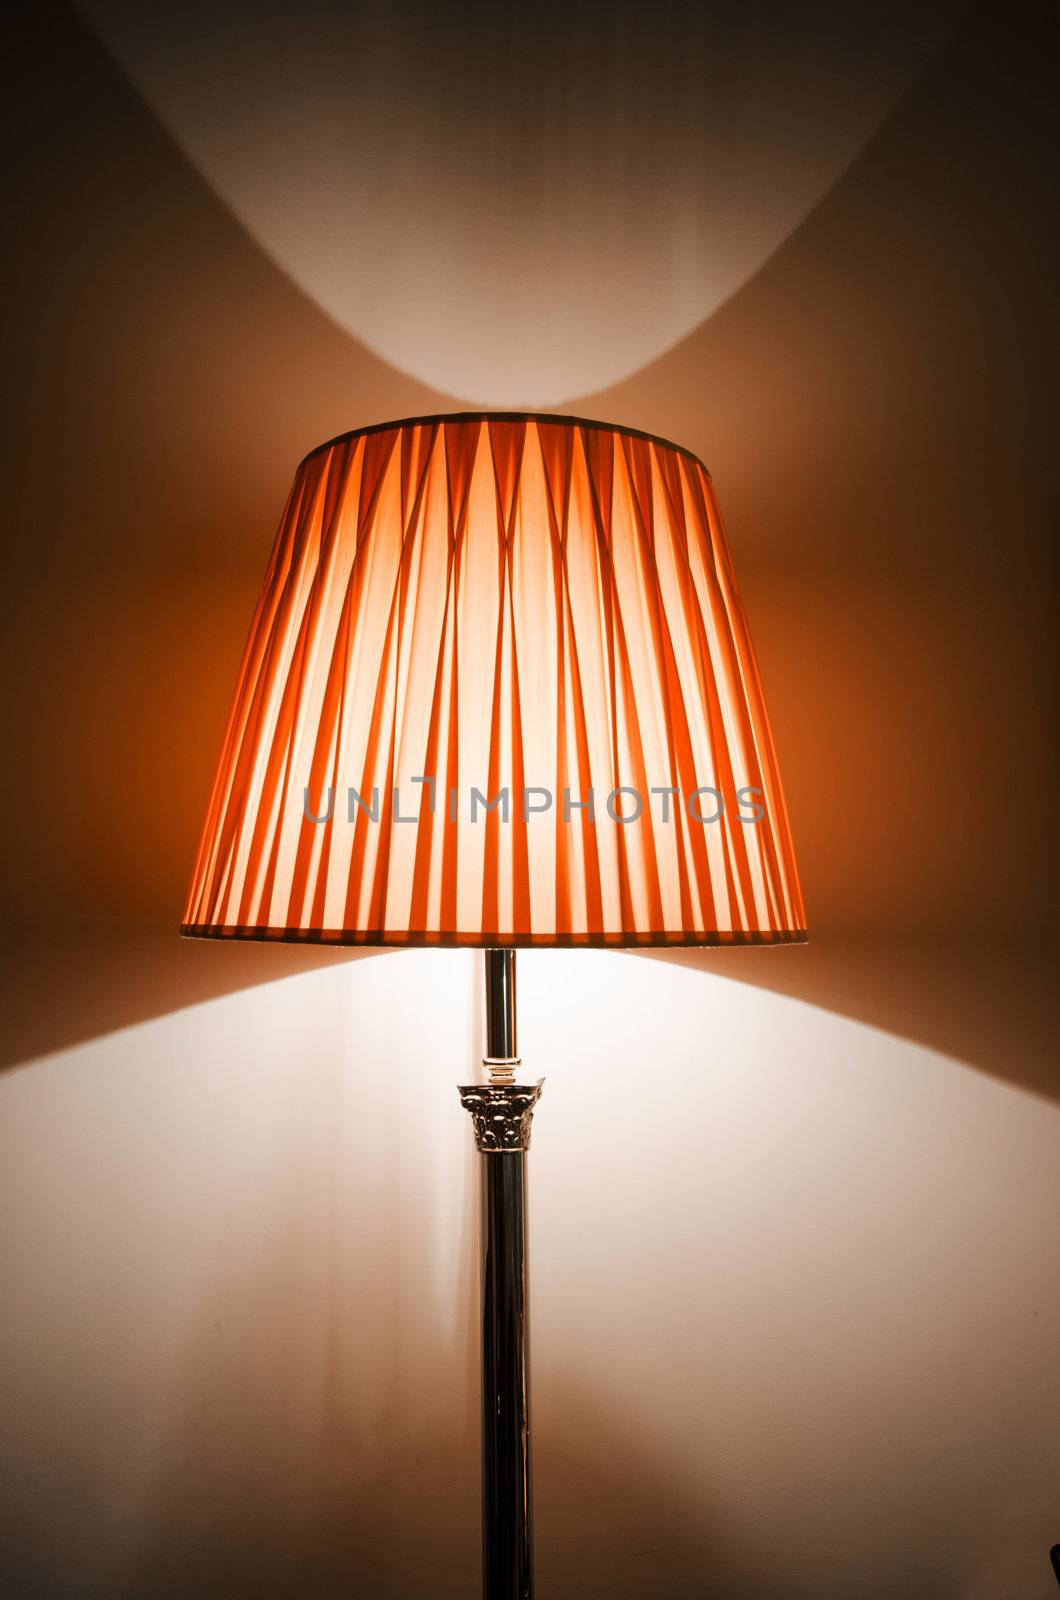 Lamp in the dark interior by Elnur